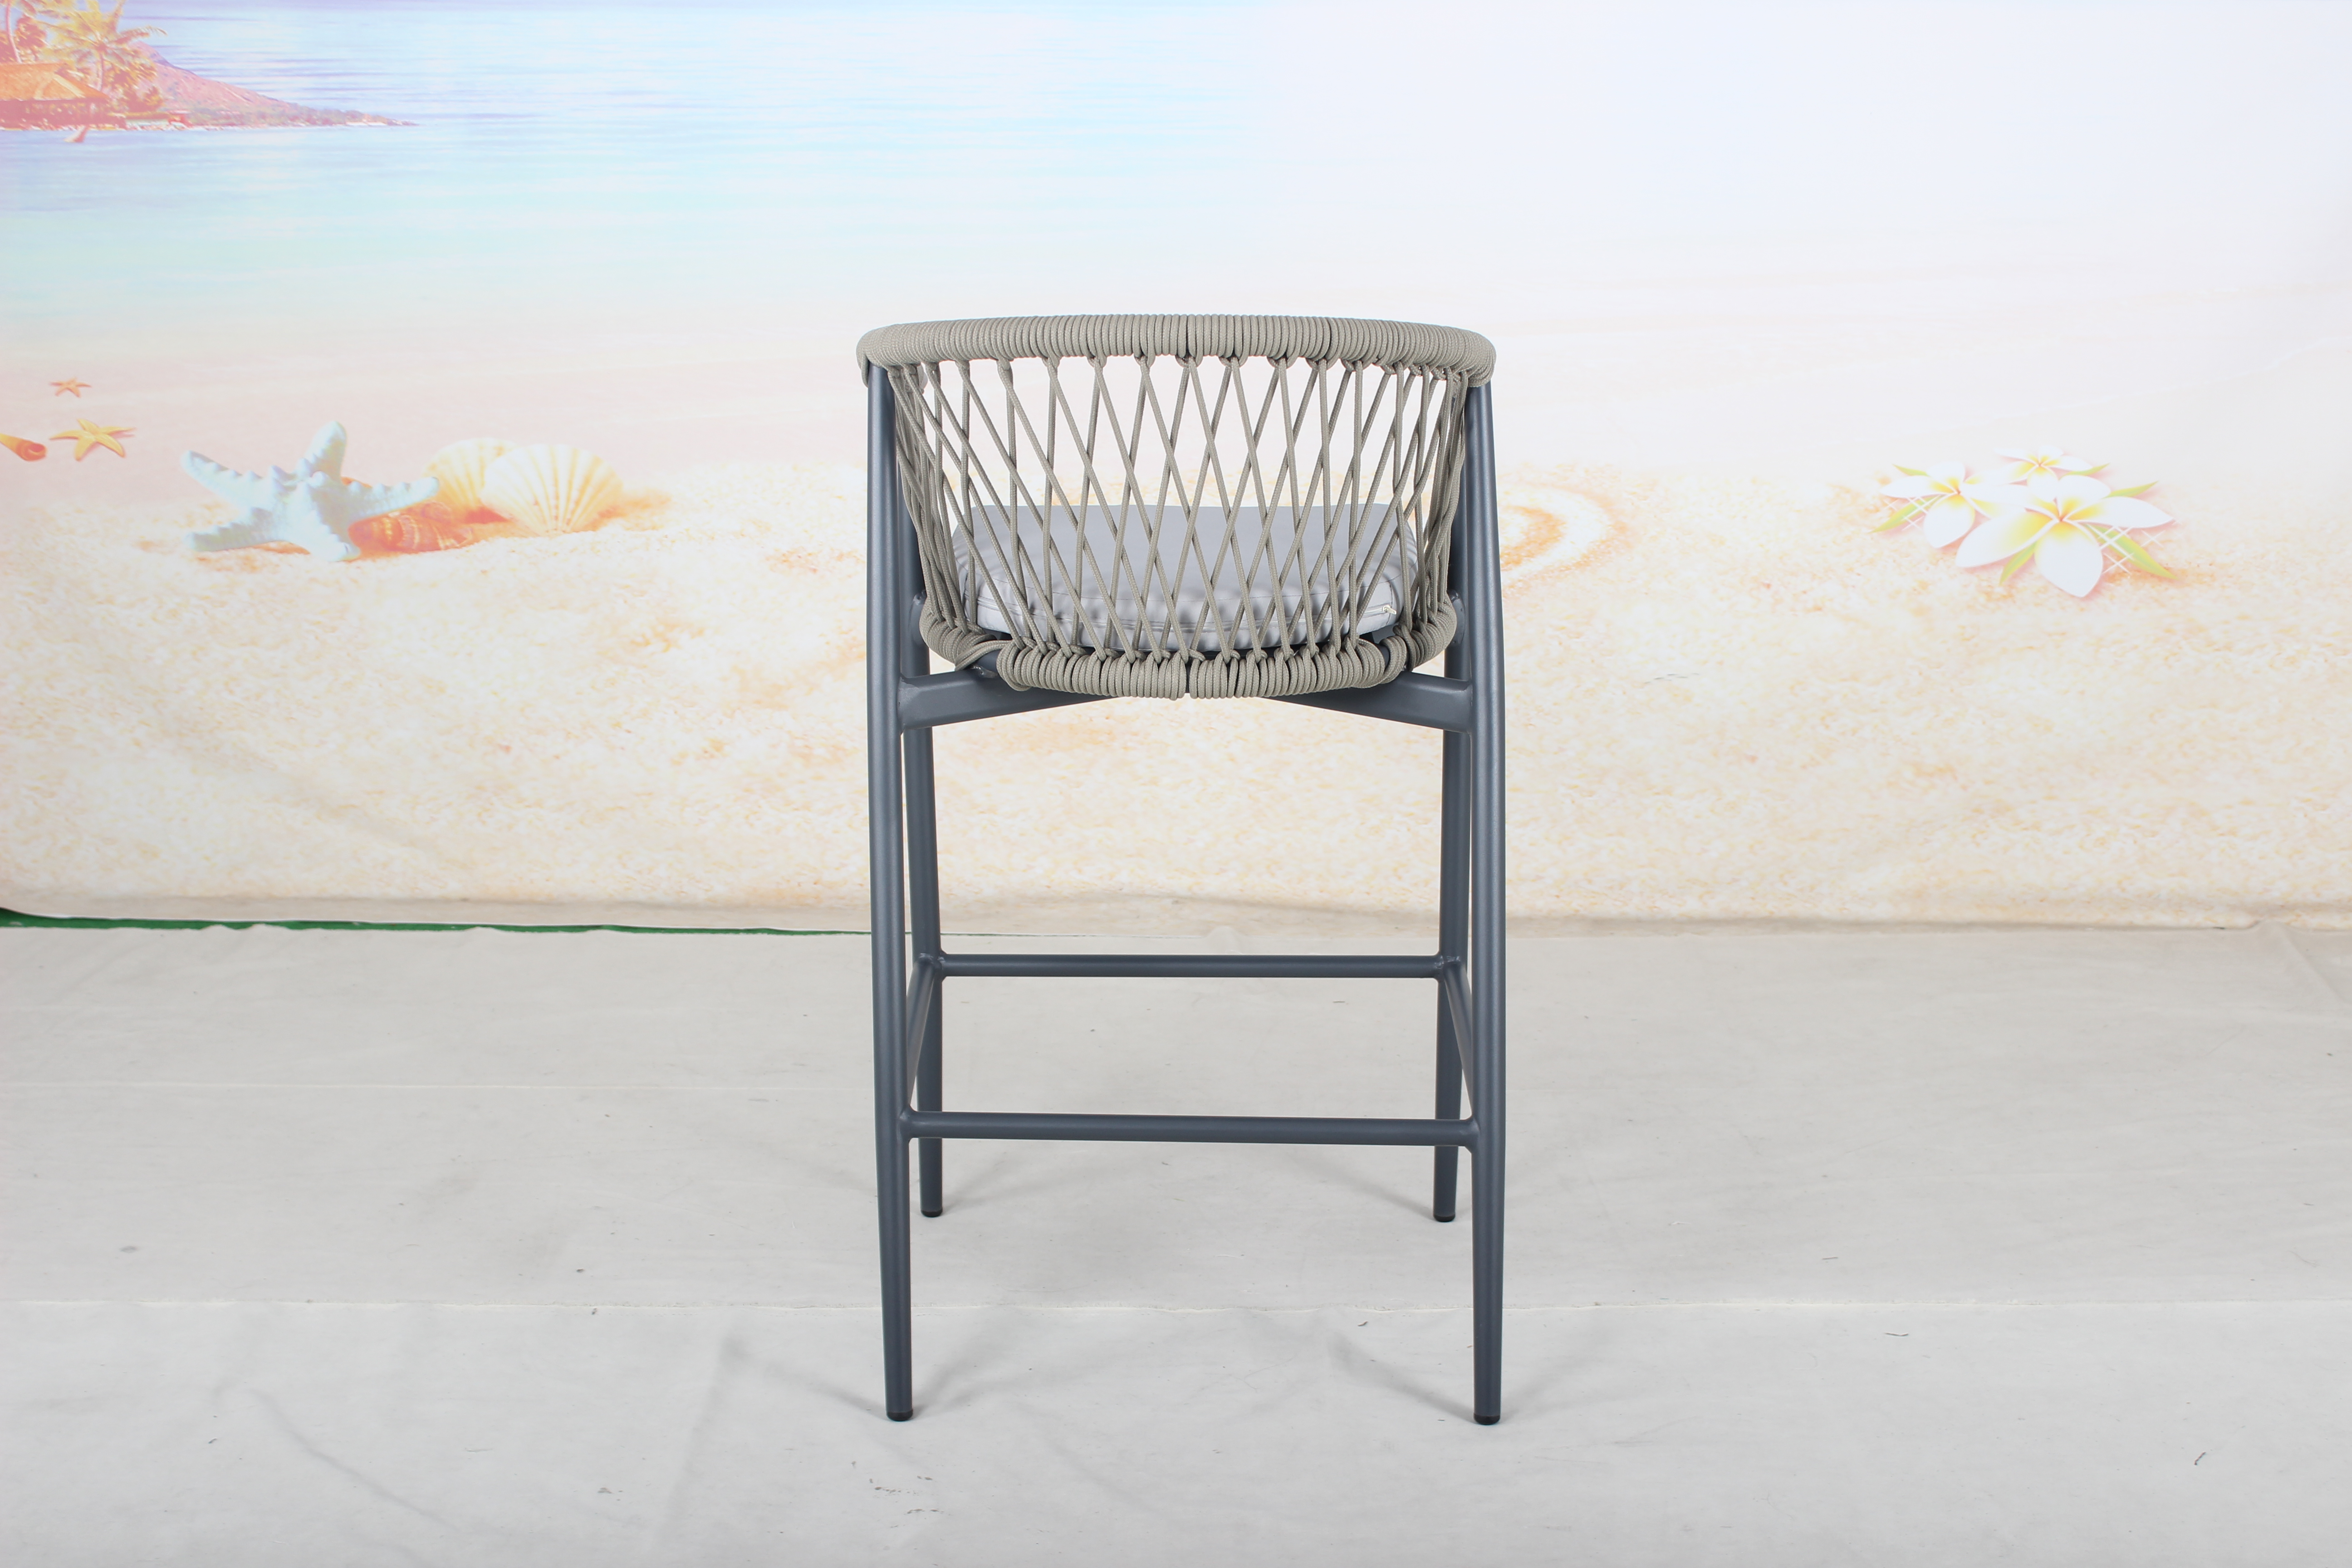 Aluminum frame patio bar height chair